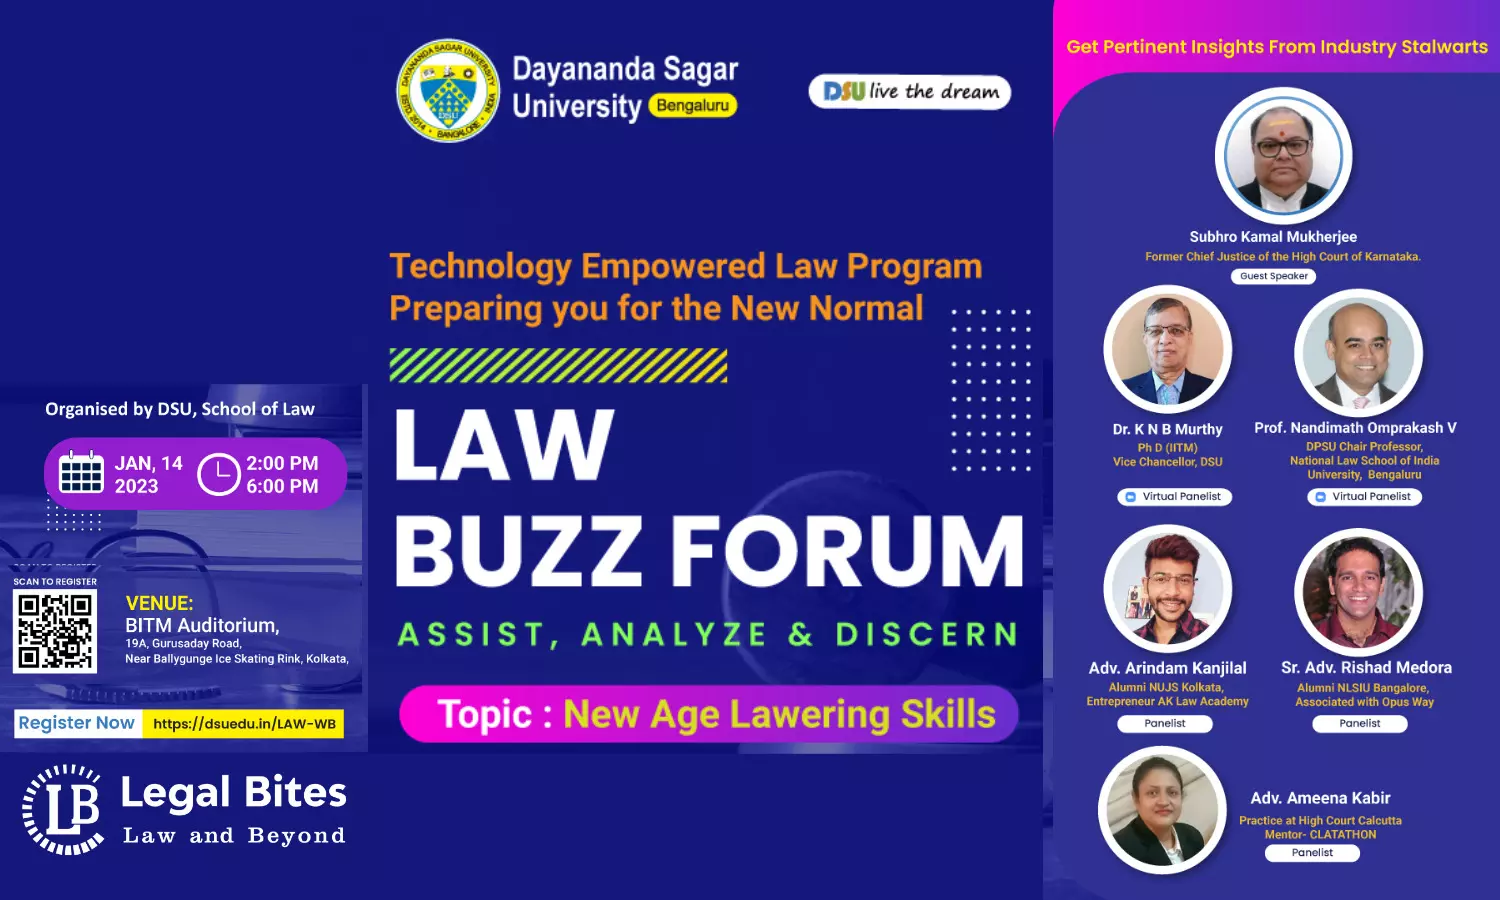 Law Buzz Forum on “New Age Lawyering Skills” | Dayananda Sagar University | 14th Jan at Kolkata